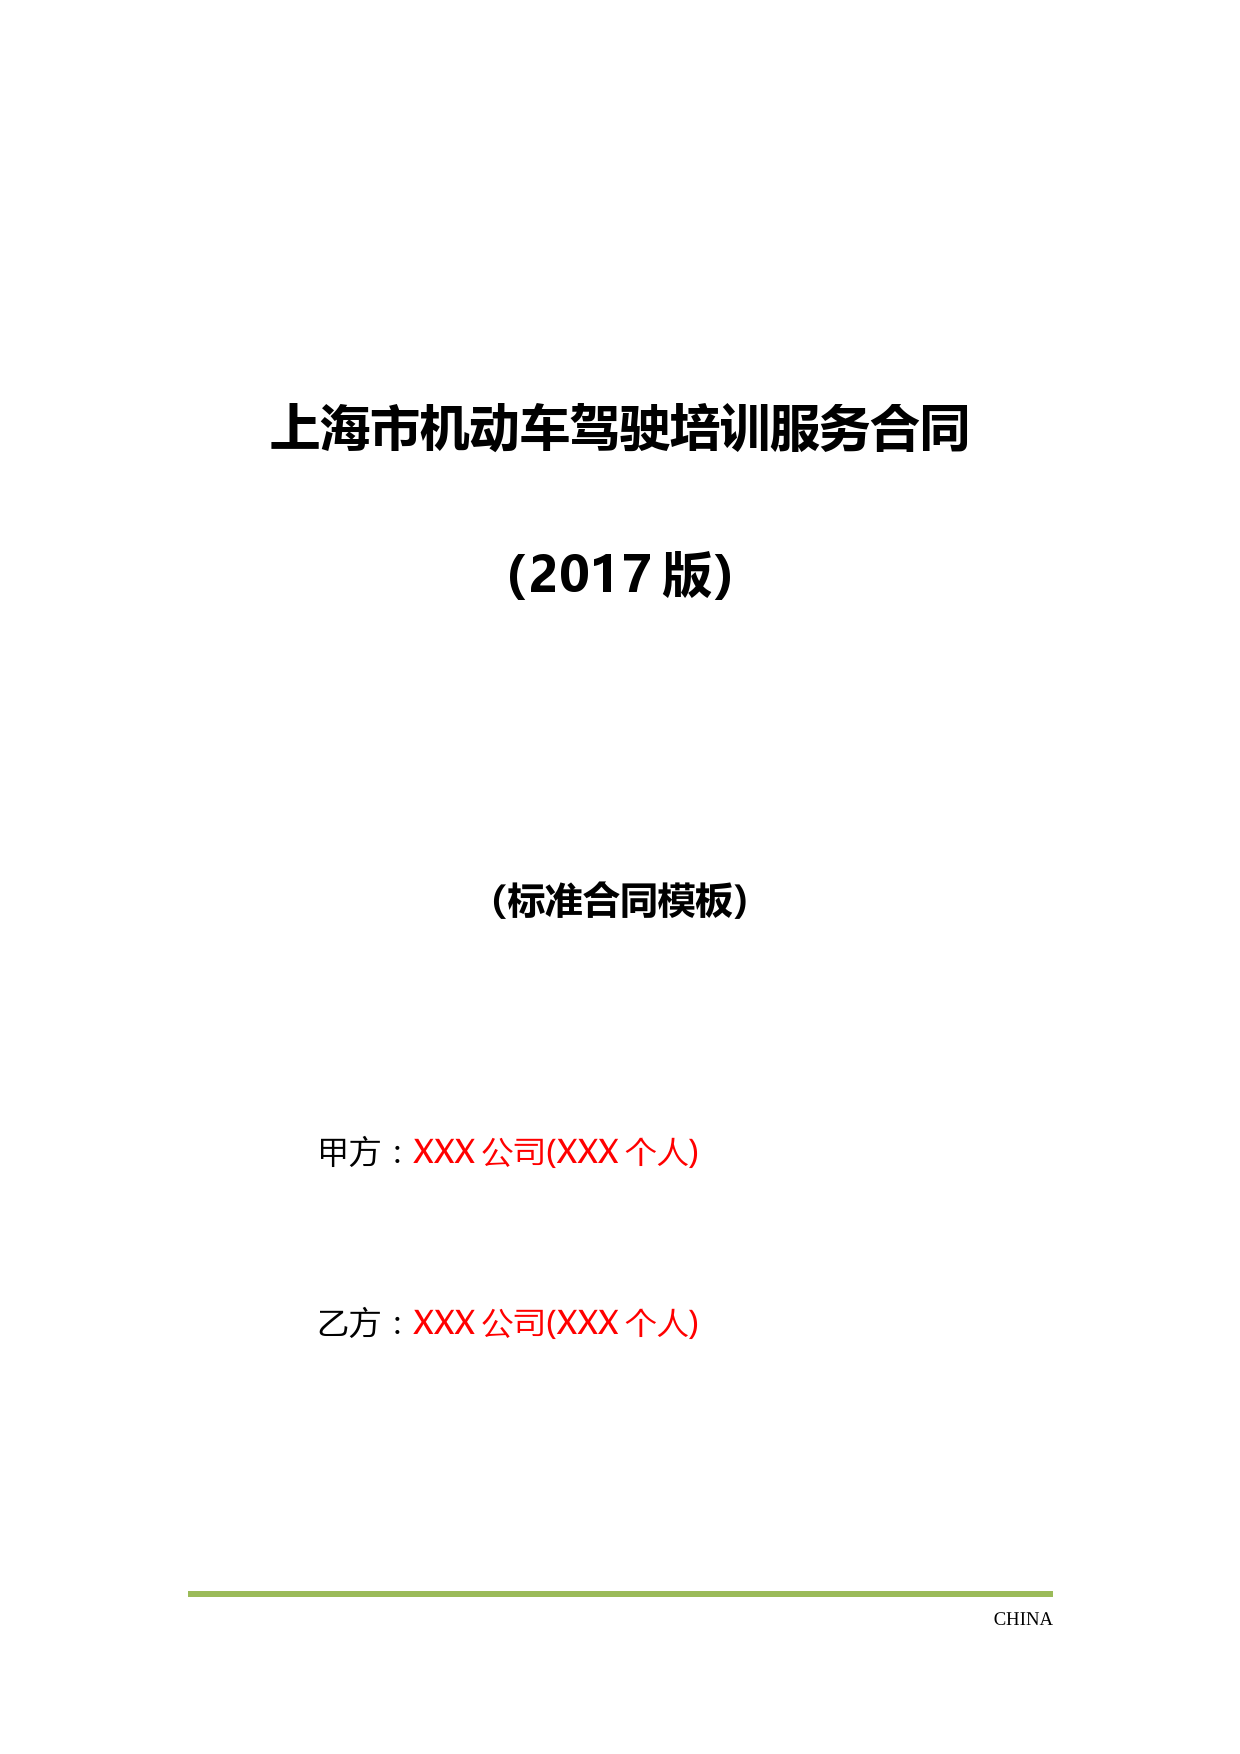 上海市机动车驾驶培训服务合同(2017版)(标准版)